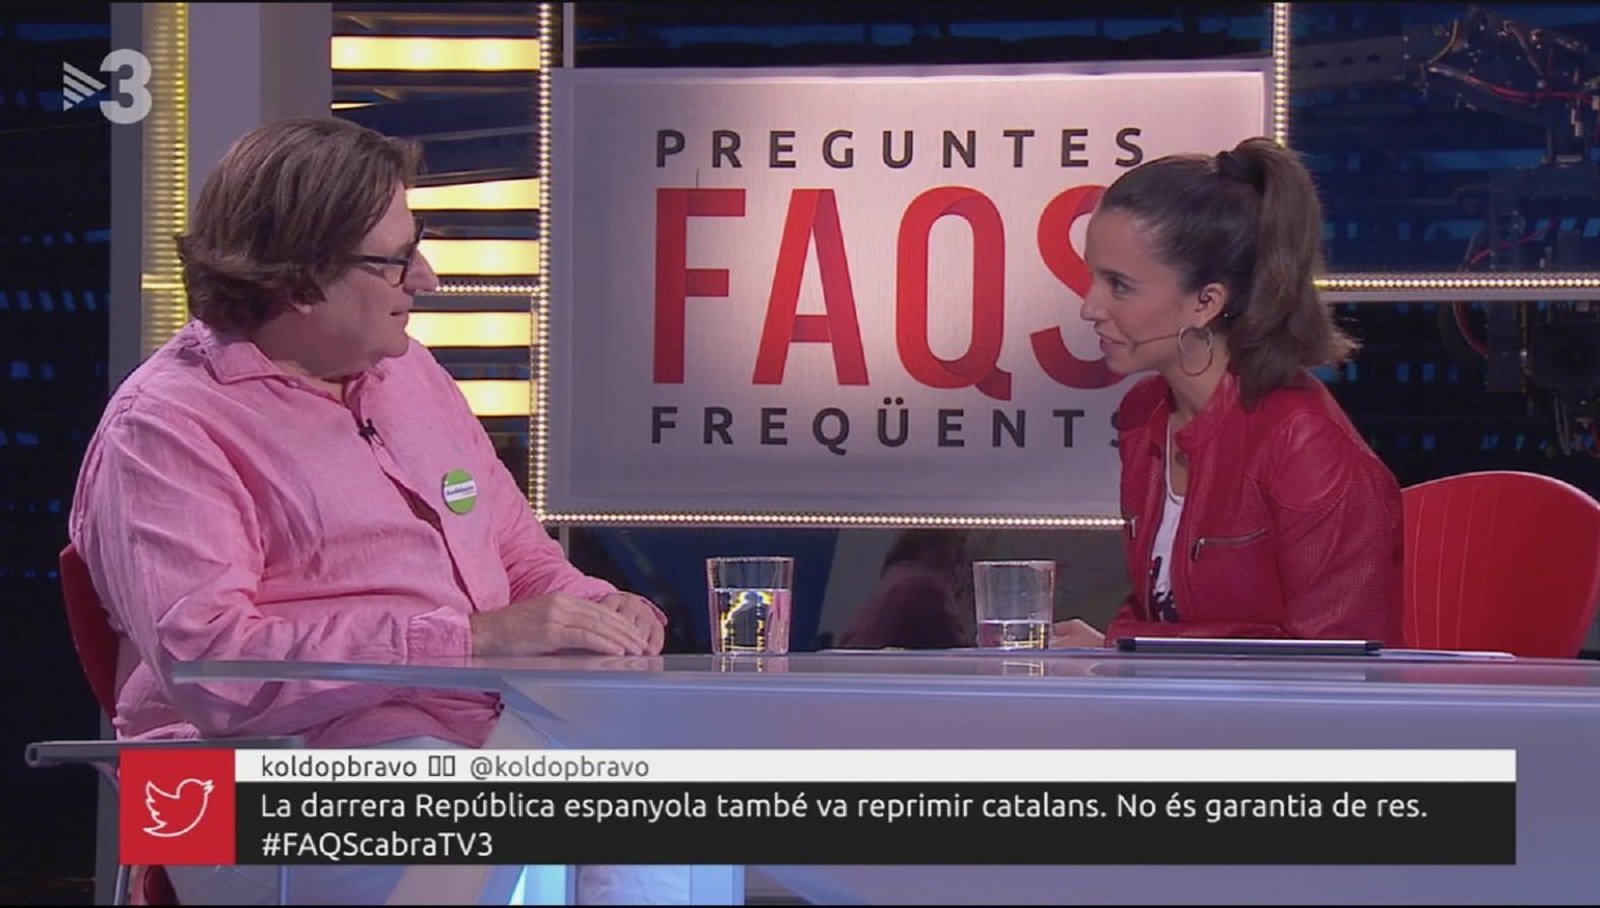 Pedro Altamirano explica los países andaluces en TV3 y el españolismo se irrita